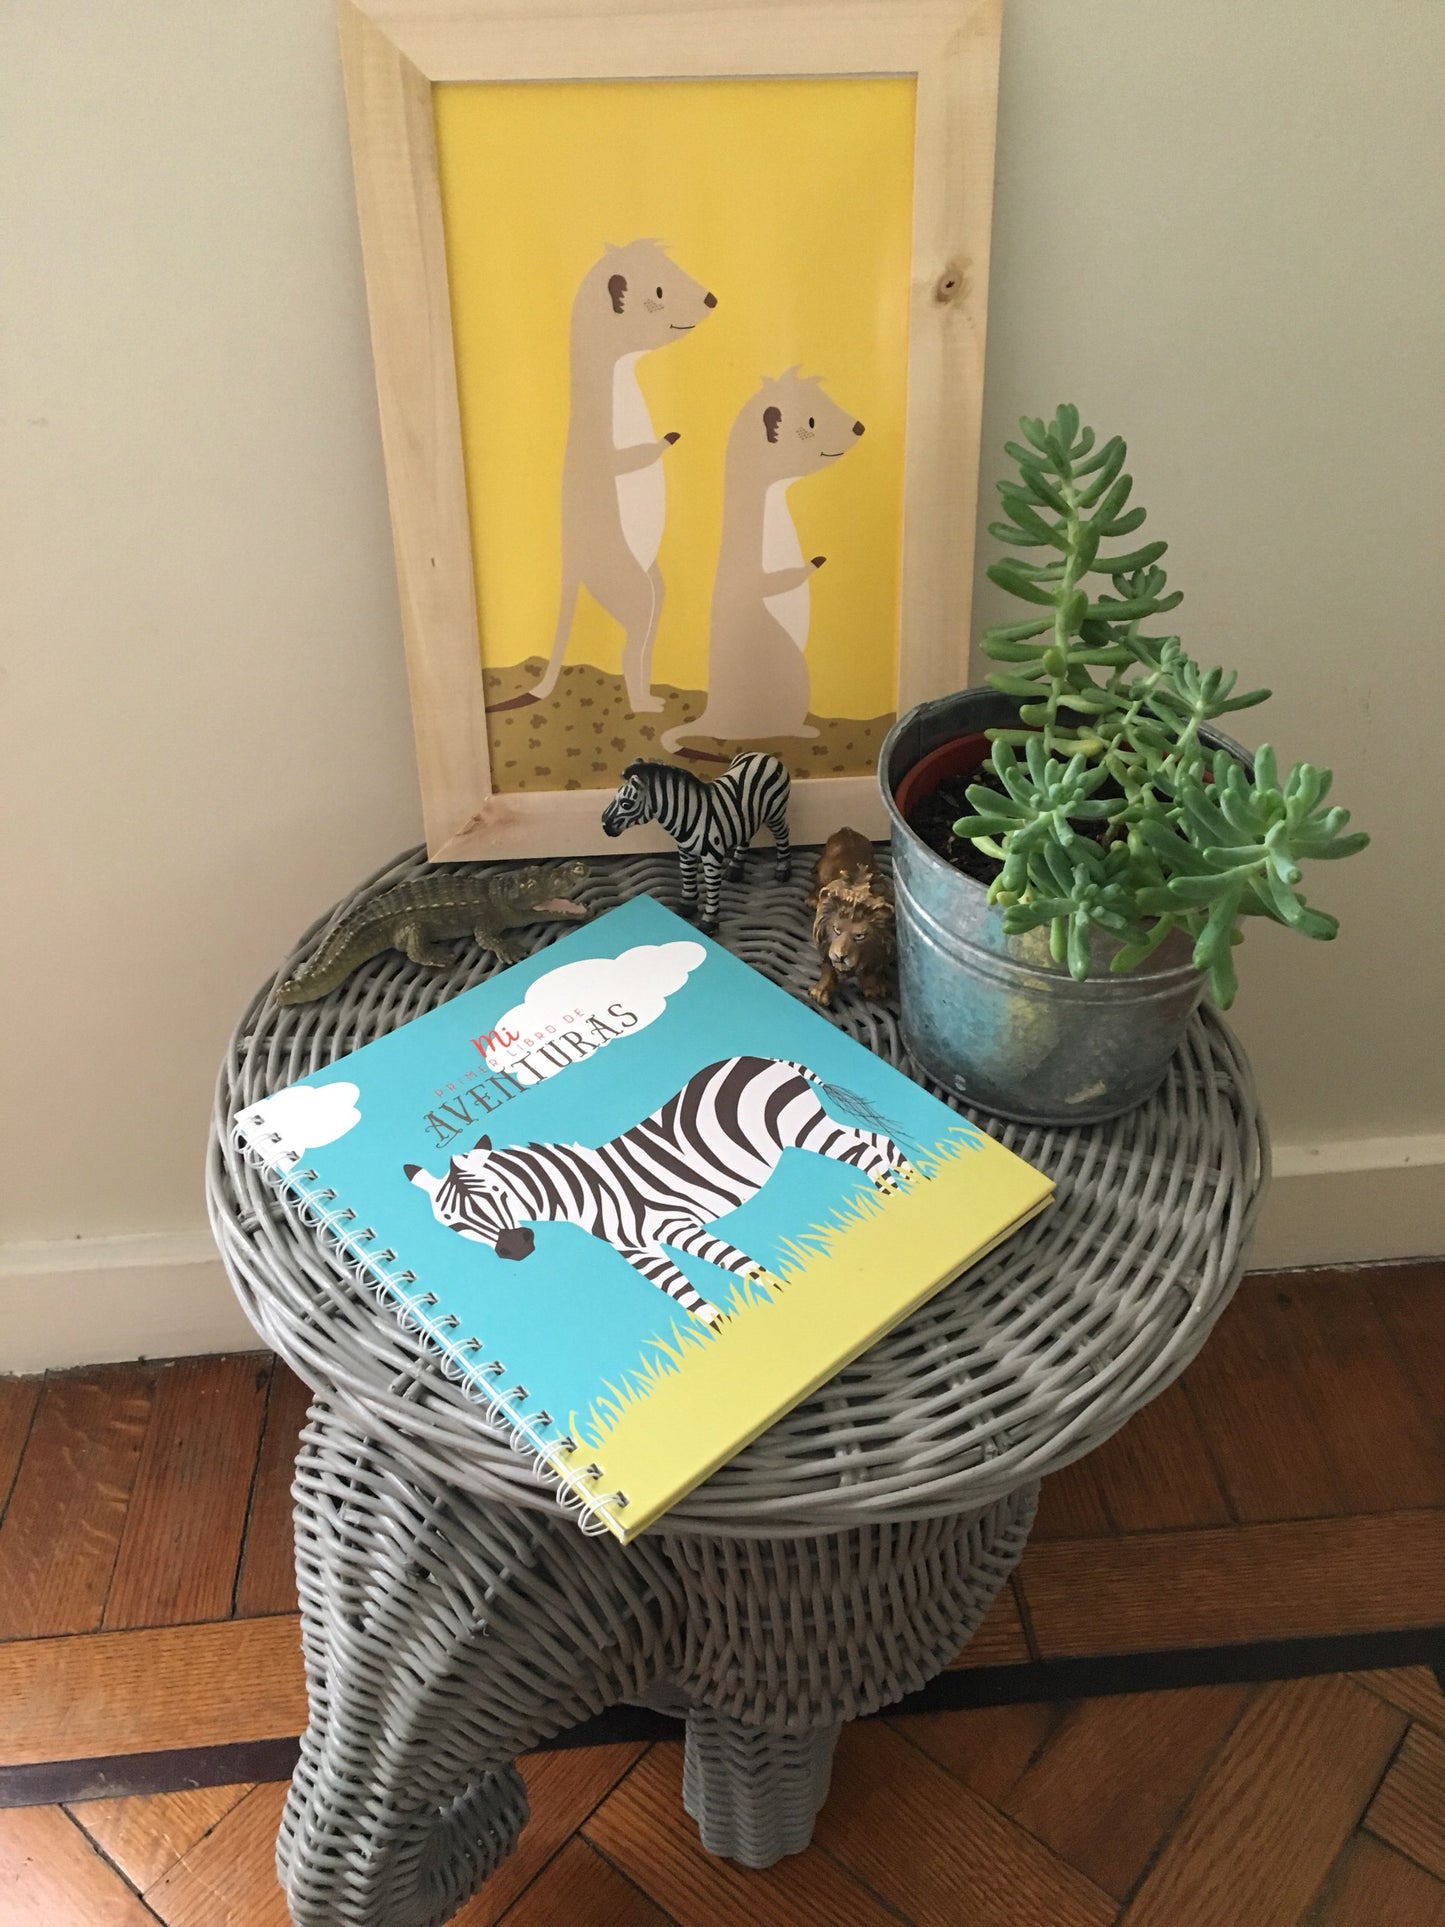 Vista frontal de libro sobre mesa con una planta y poster de suricatas. Fondo de una pared con piso de madera.